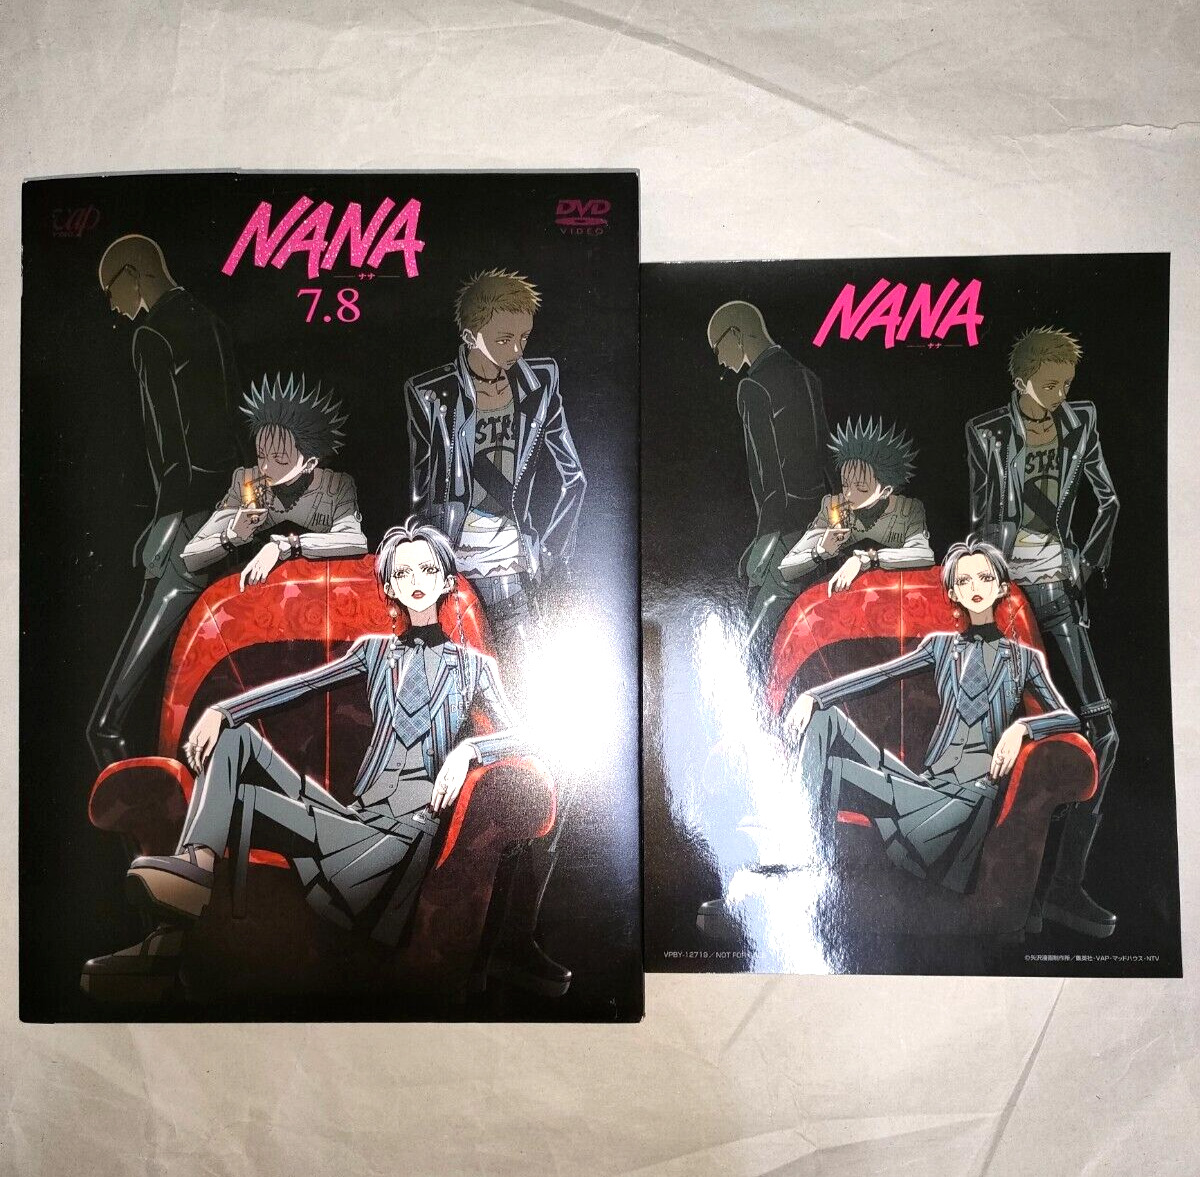 New Sealed NANA 7.8 DVD Special Edition w/ limited sticker Ai Yazawa w/tracking